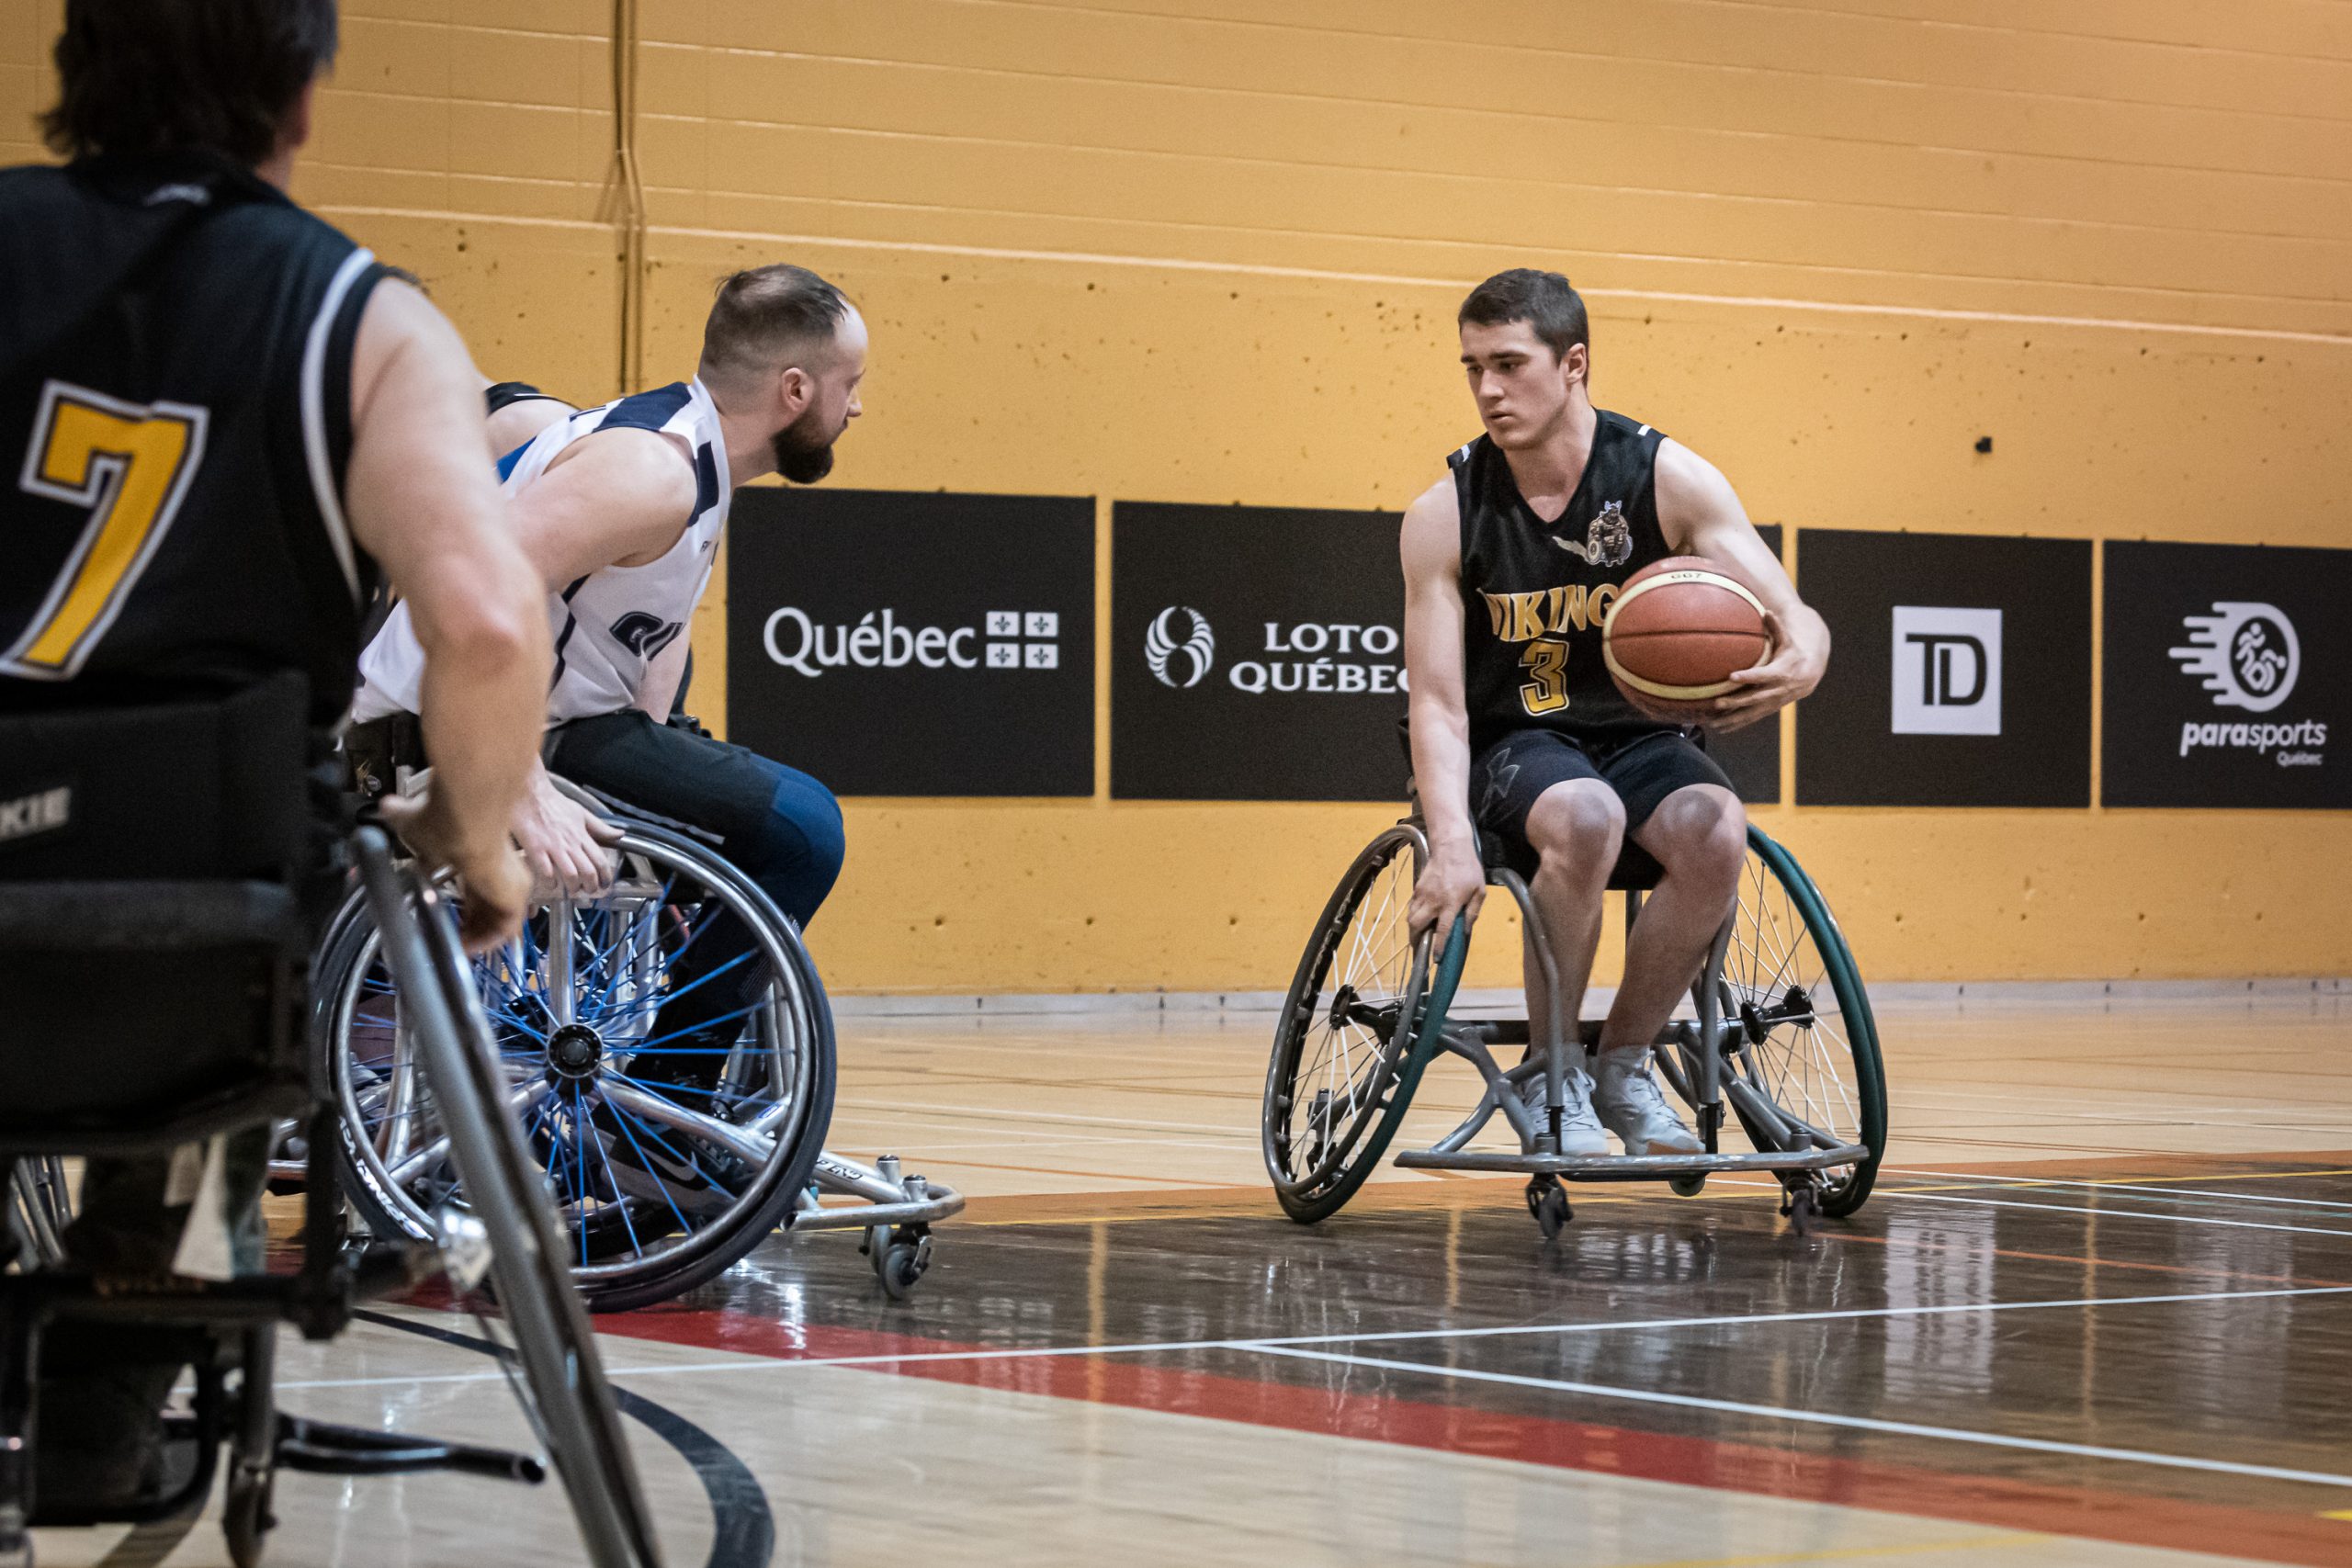 Un joueur de basketball en fauteuil roulant se déplace avec le ballon dans sa main gauche. Il regarde à sa droite, d'où un adversaire vient l'intercepter.